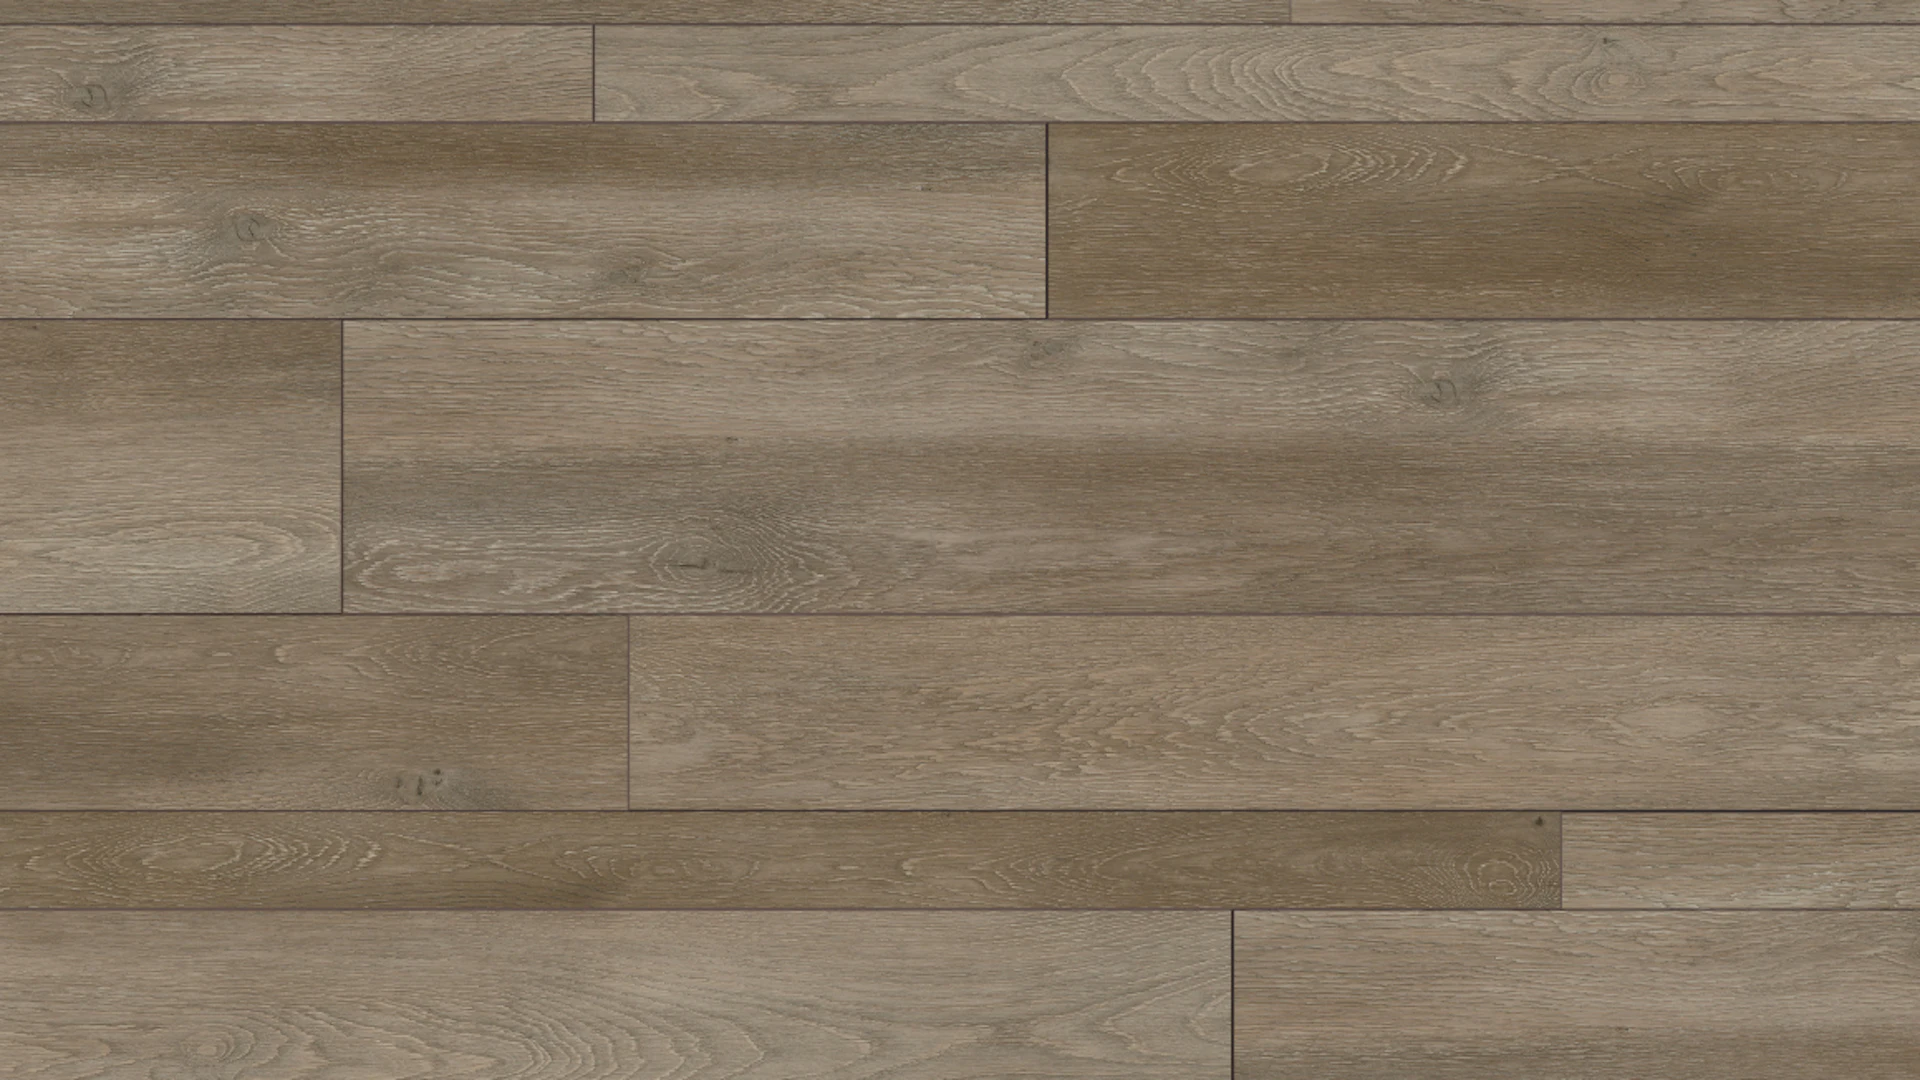 Project Floors adhesive Vinyl - floors@home30 PW 1255/30 (PW125530)